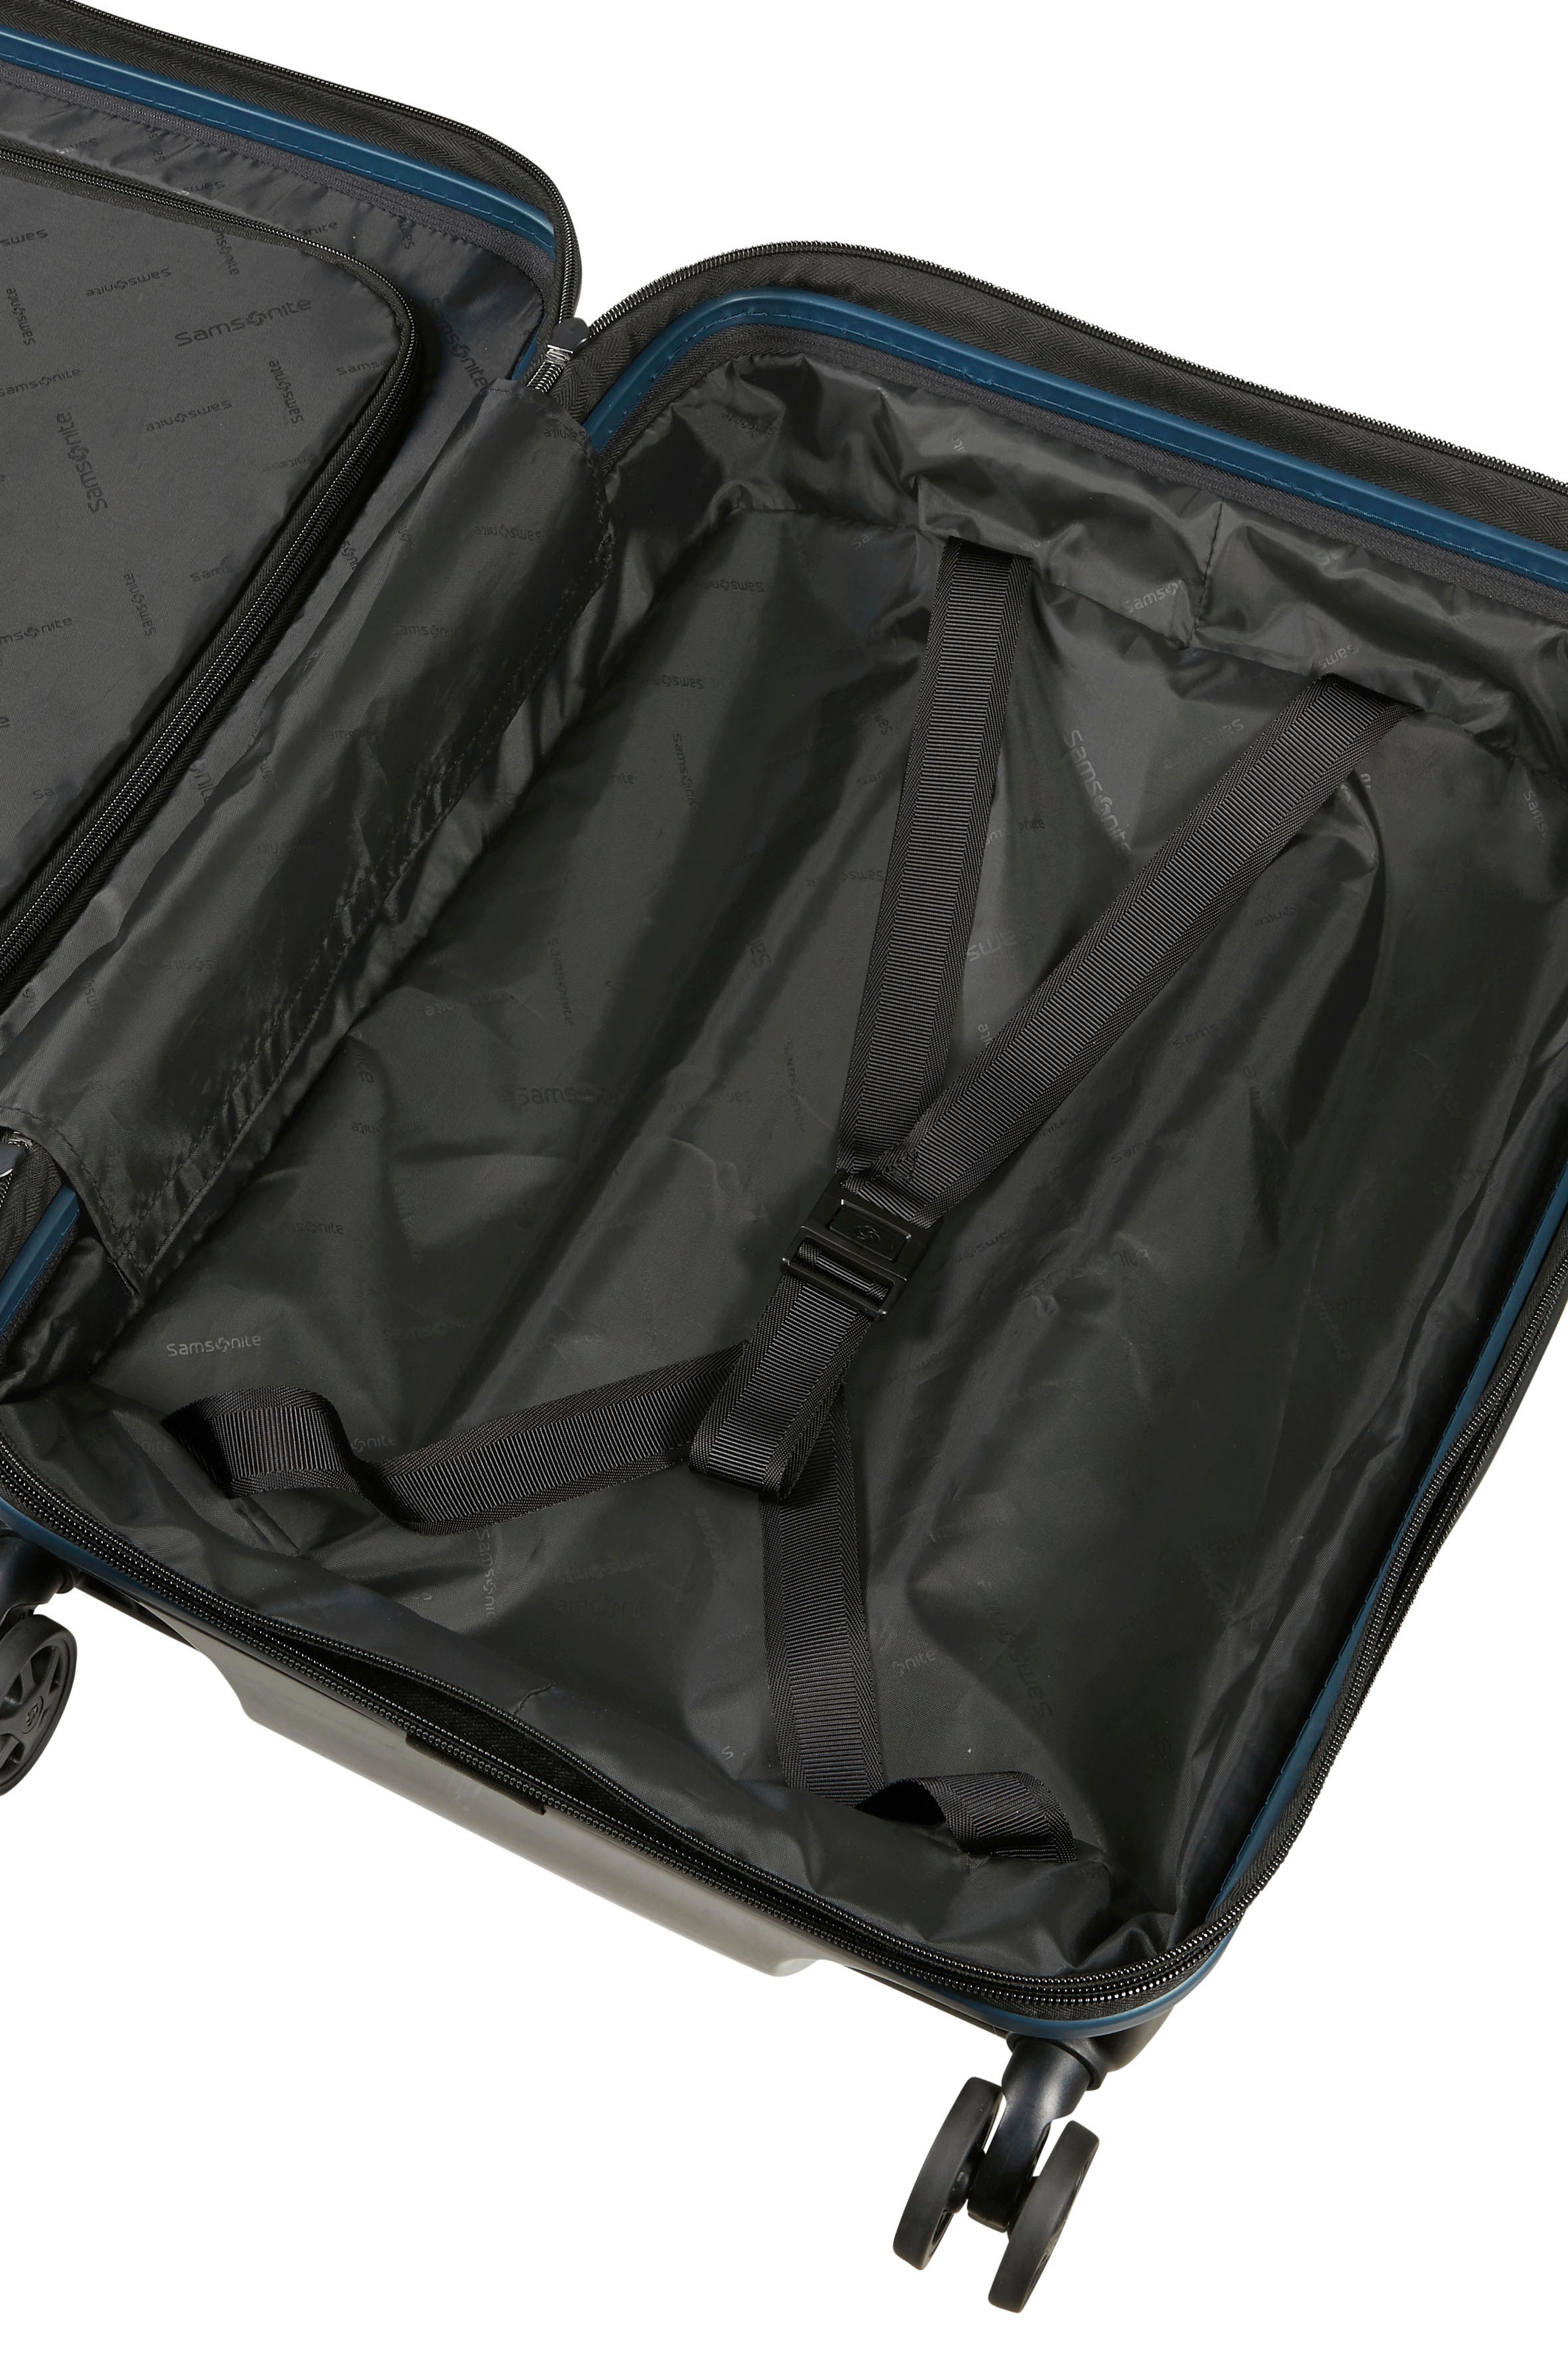 Samsonite Koffer »NUON 69«, 4 Rollen, Reisekoffer Aufgabegepäck Koffer für Flugreisen TSA-Zahlenschloss